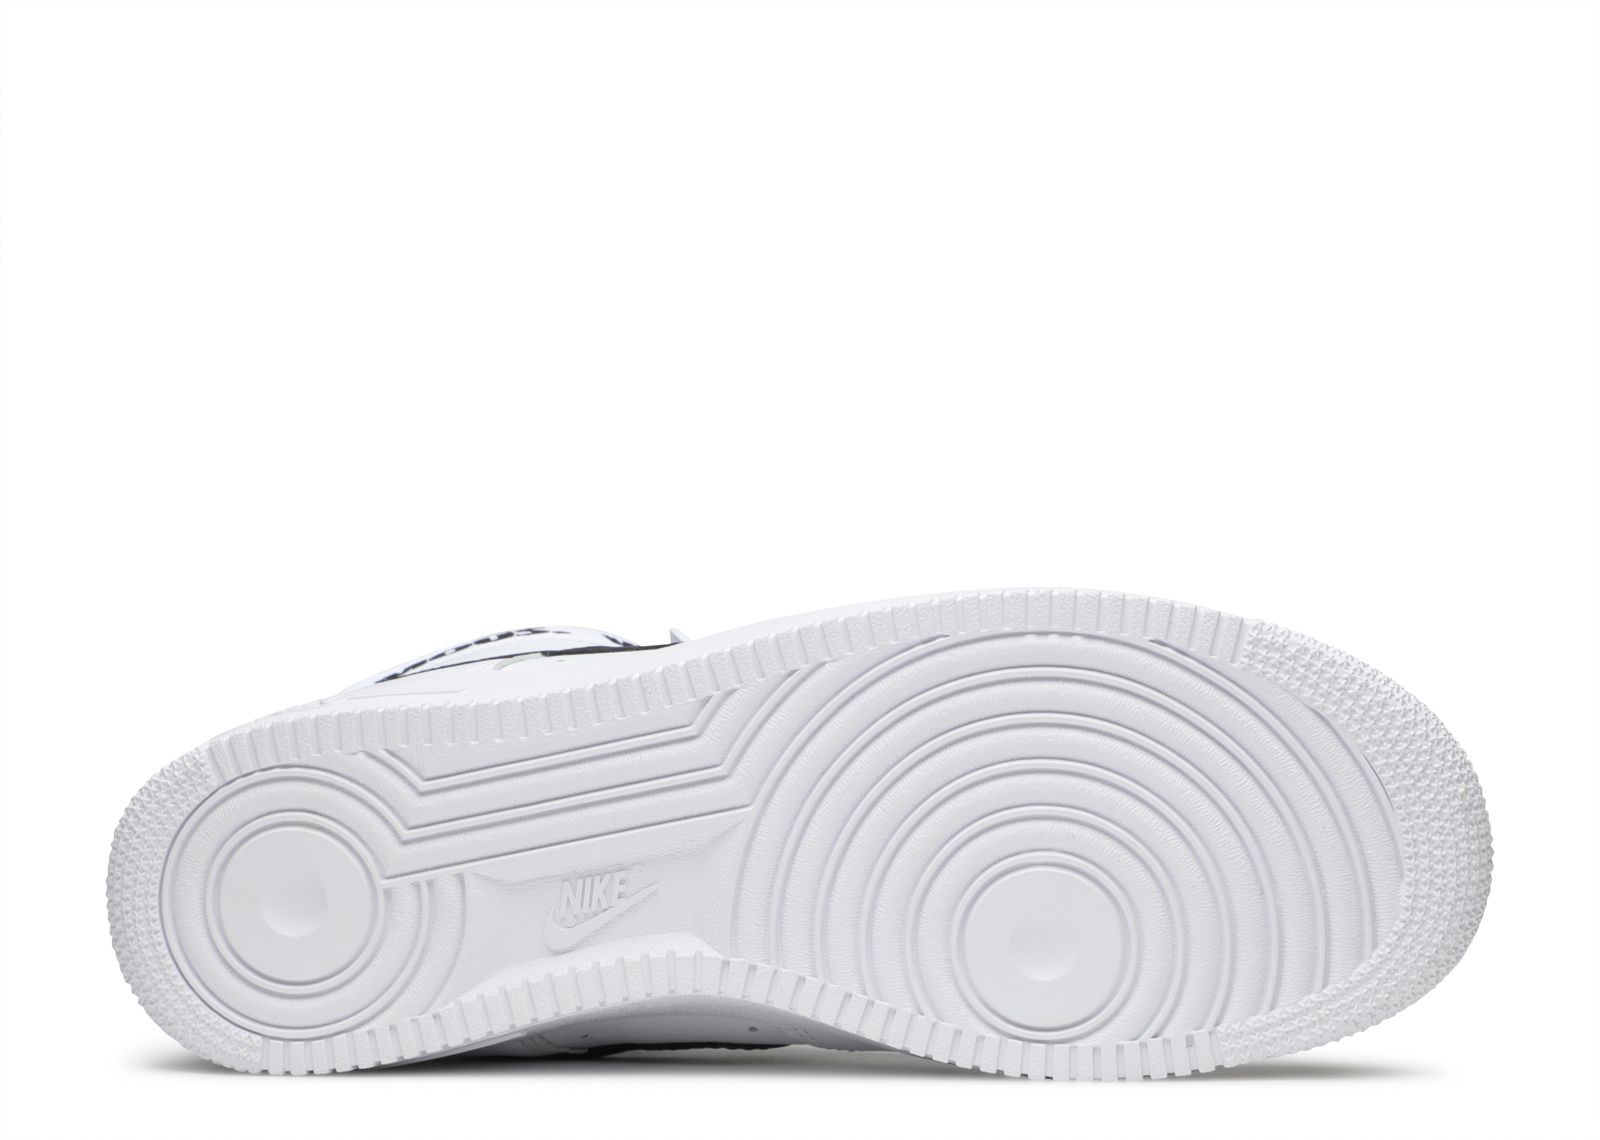 Supreme X Air Force 1 High Supreme 'White' - Nike - 698696 100 